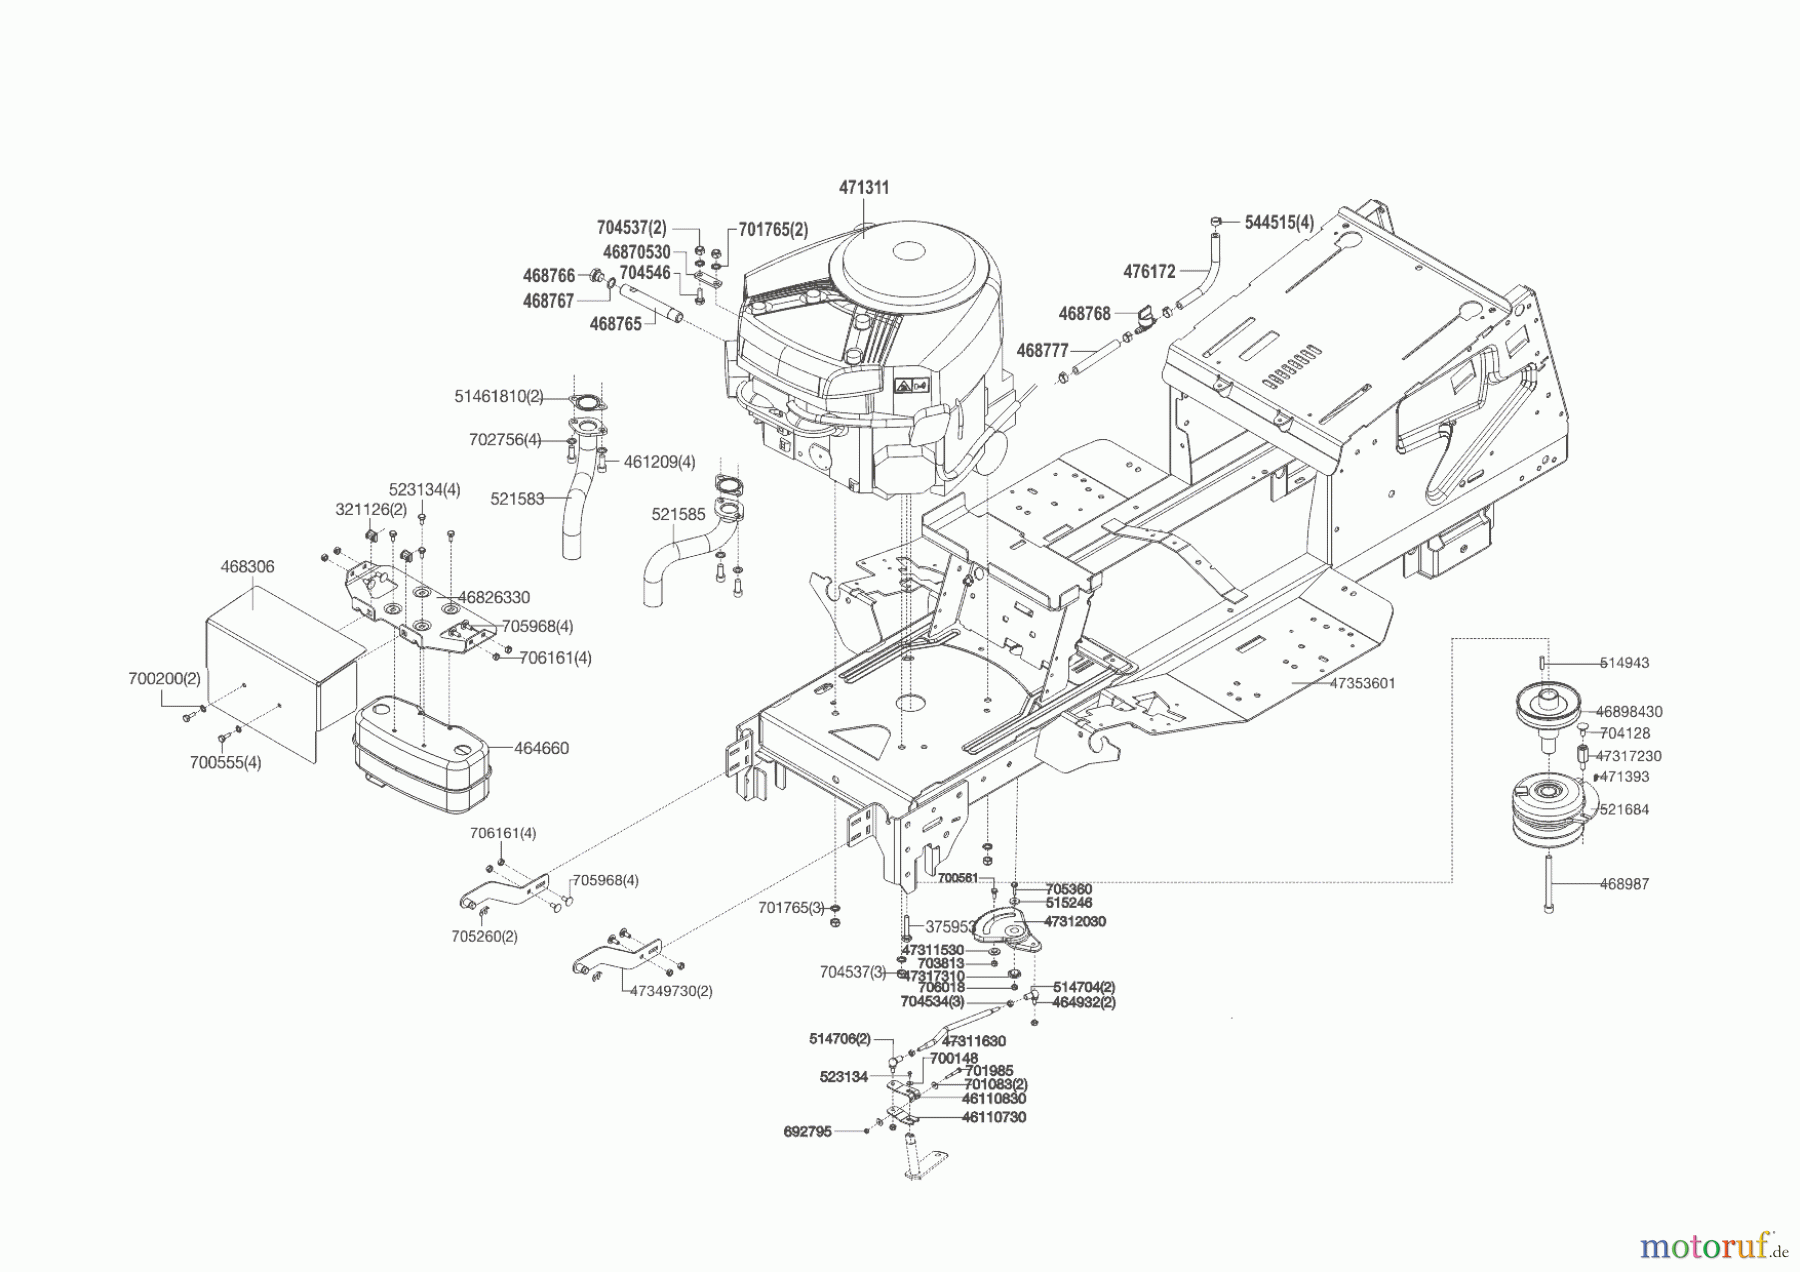  Powerline Gartentechnik Rasentraktor T 16-95.4 HD V2  09/2014 - 05/2016 Seite 2